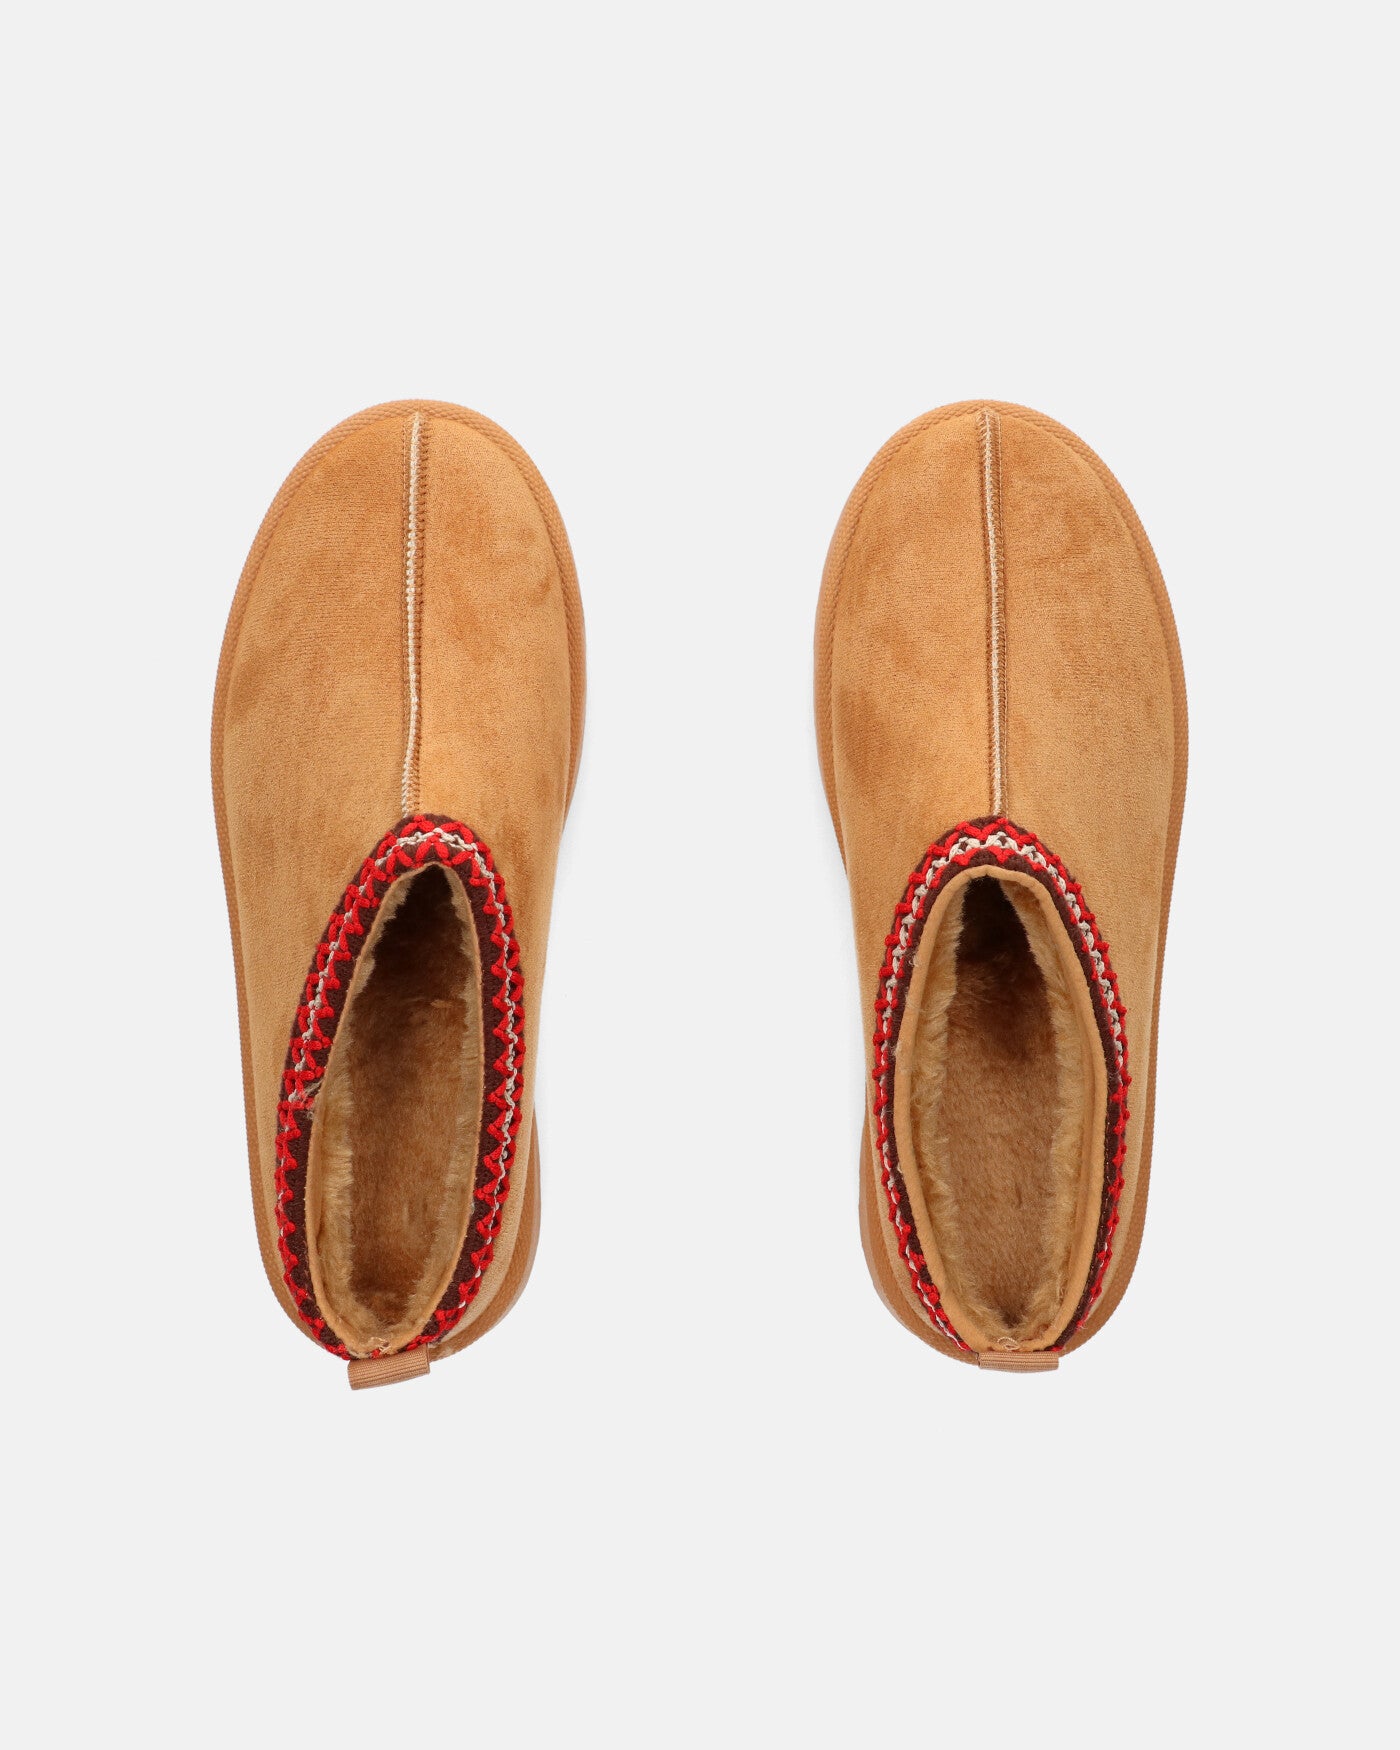 ZELDA - brown suede platform slippers